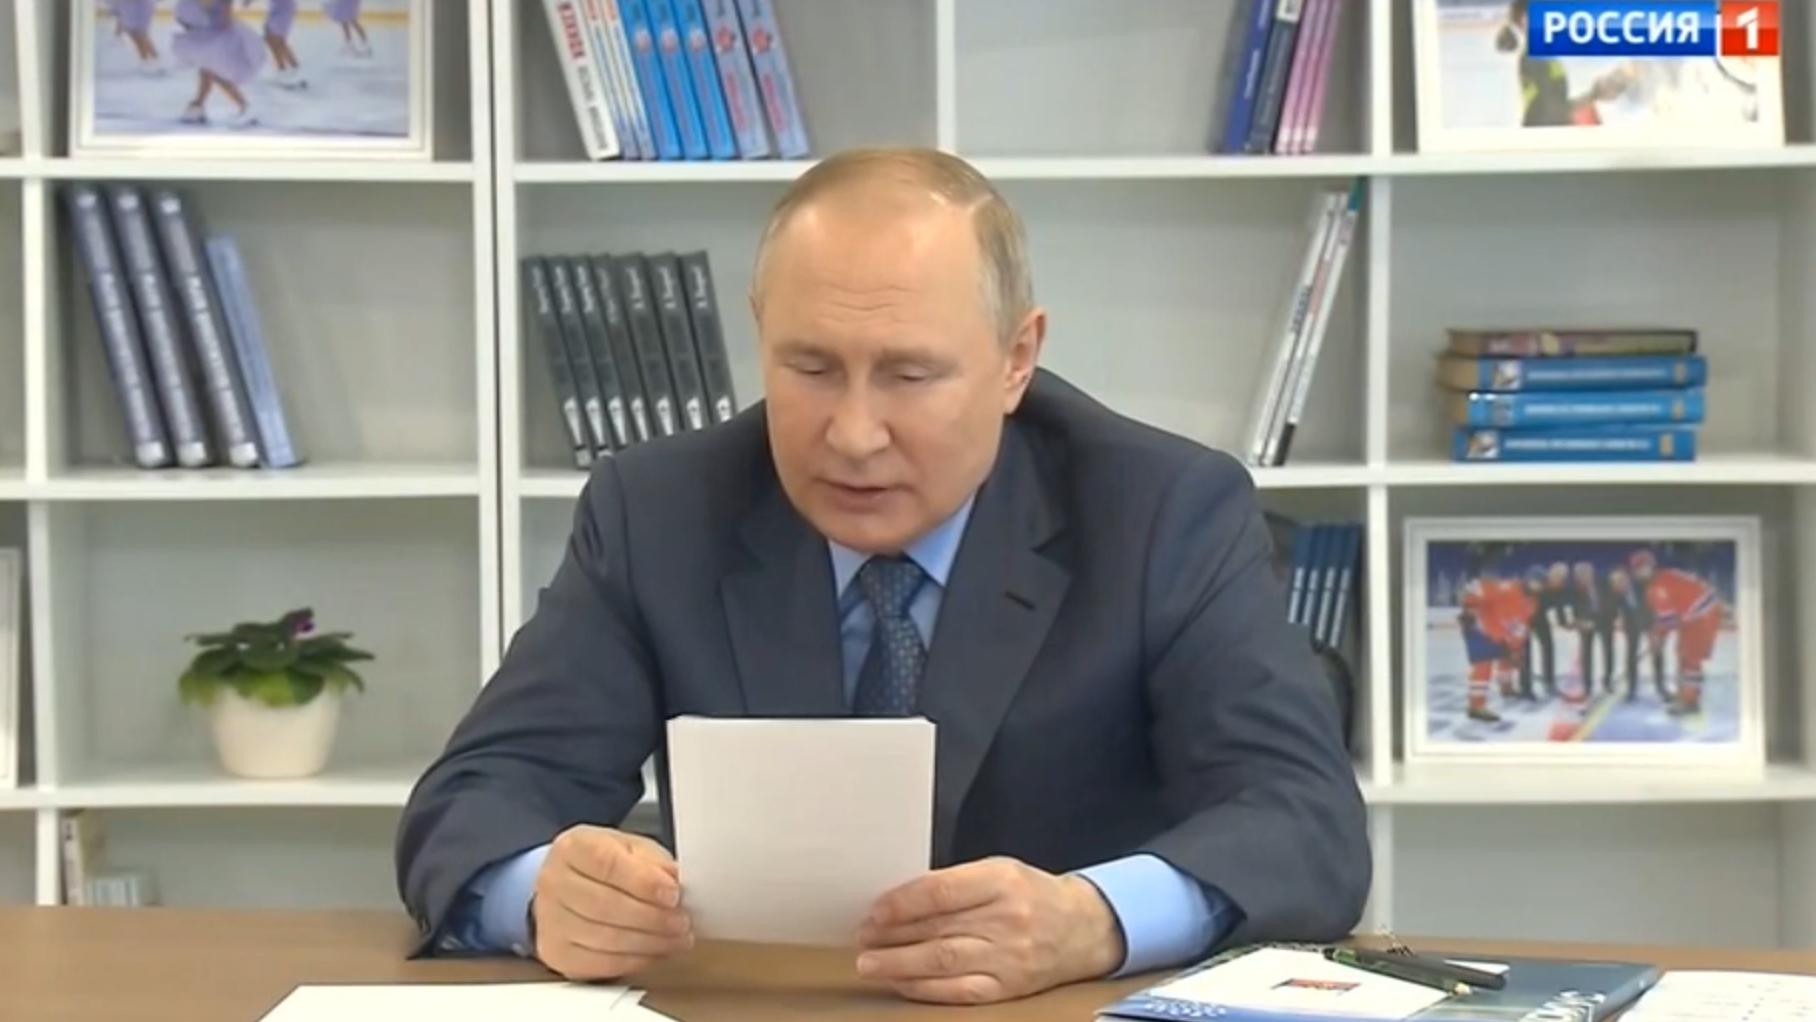 Putin czyta z kartki. W tle półki z dziecięcymi książkami